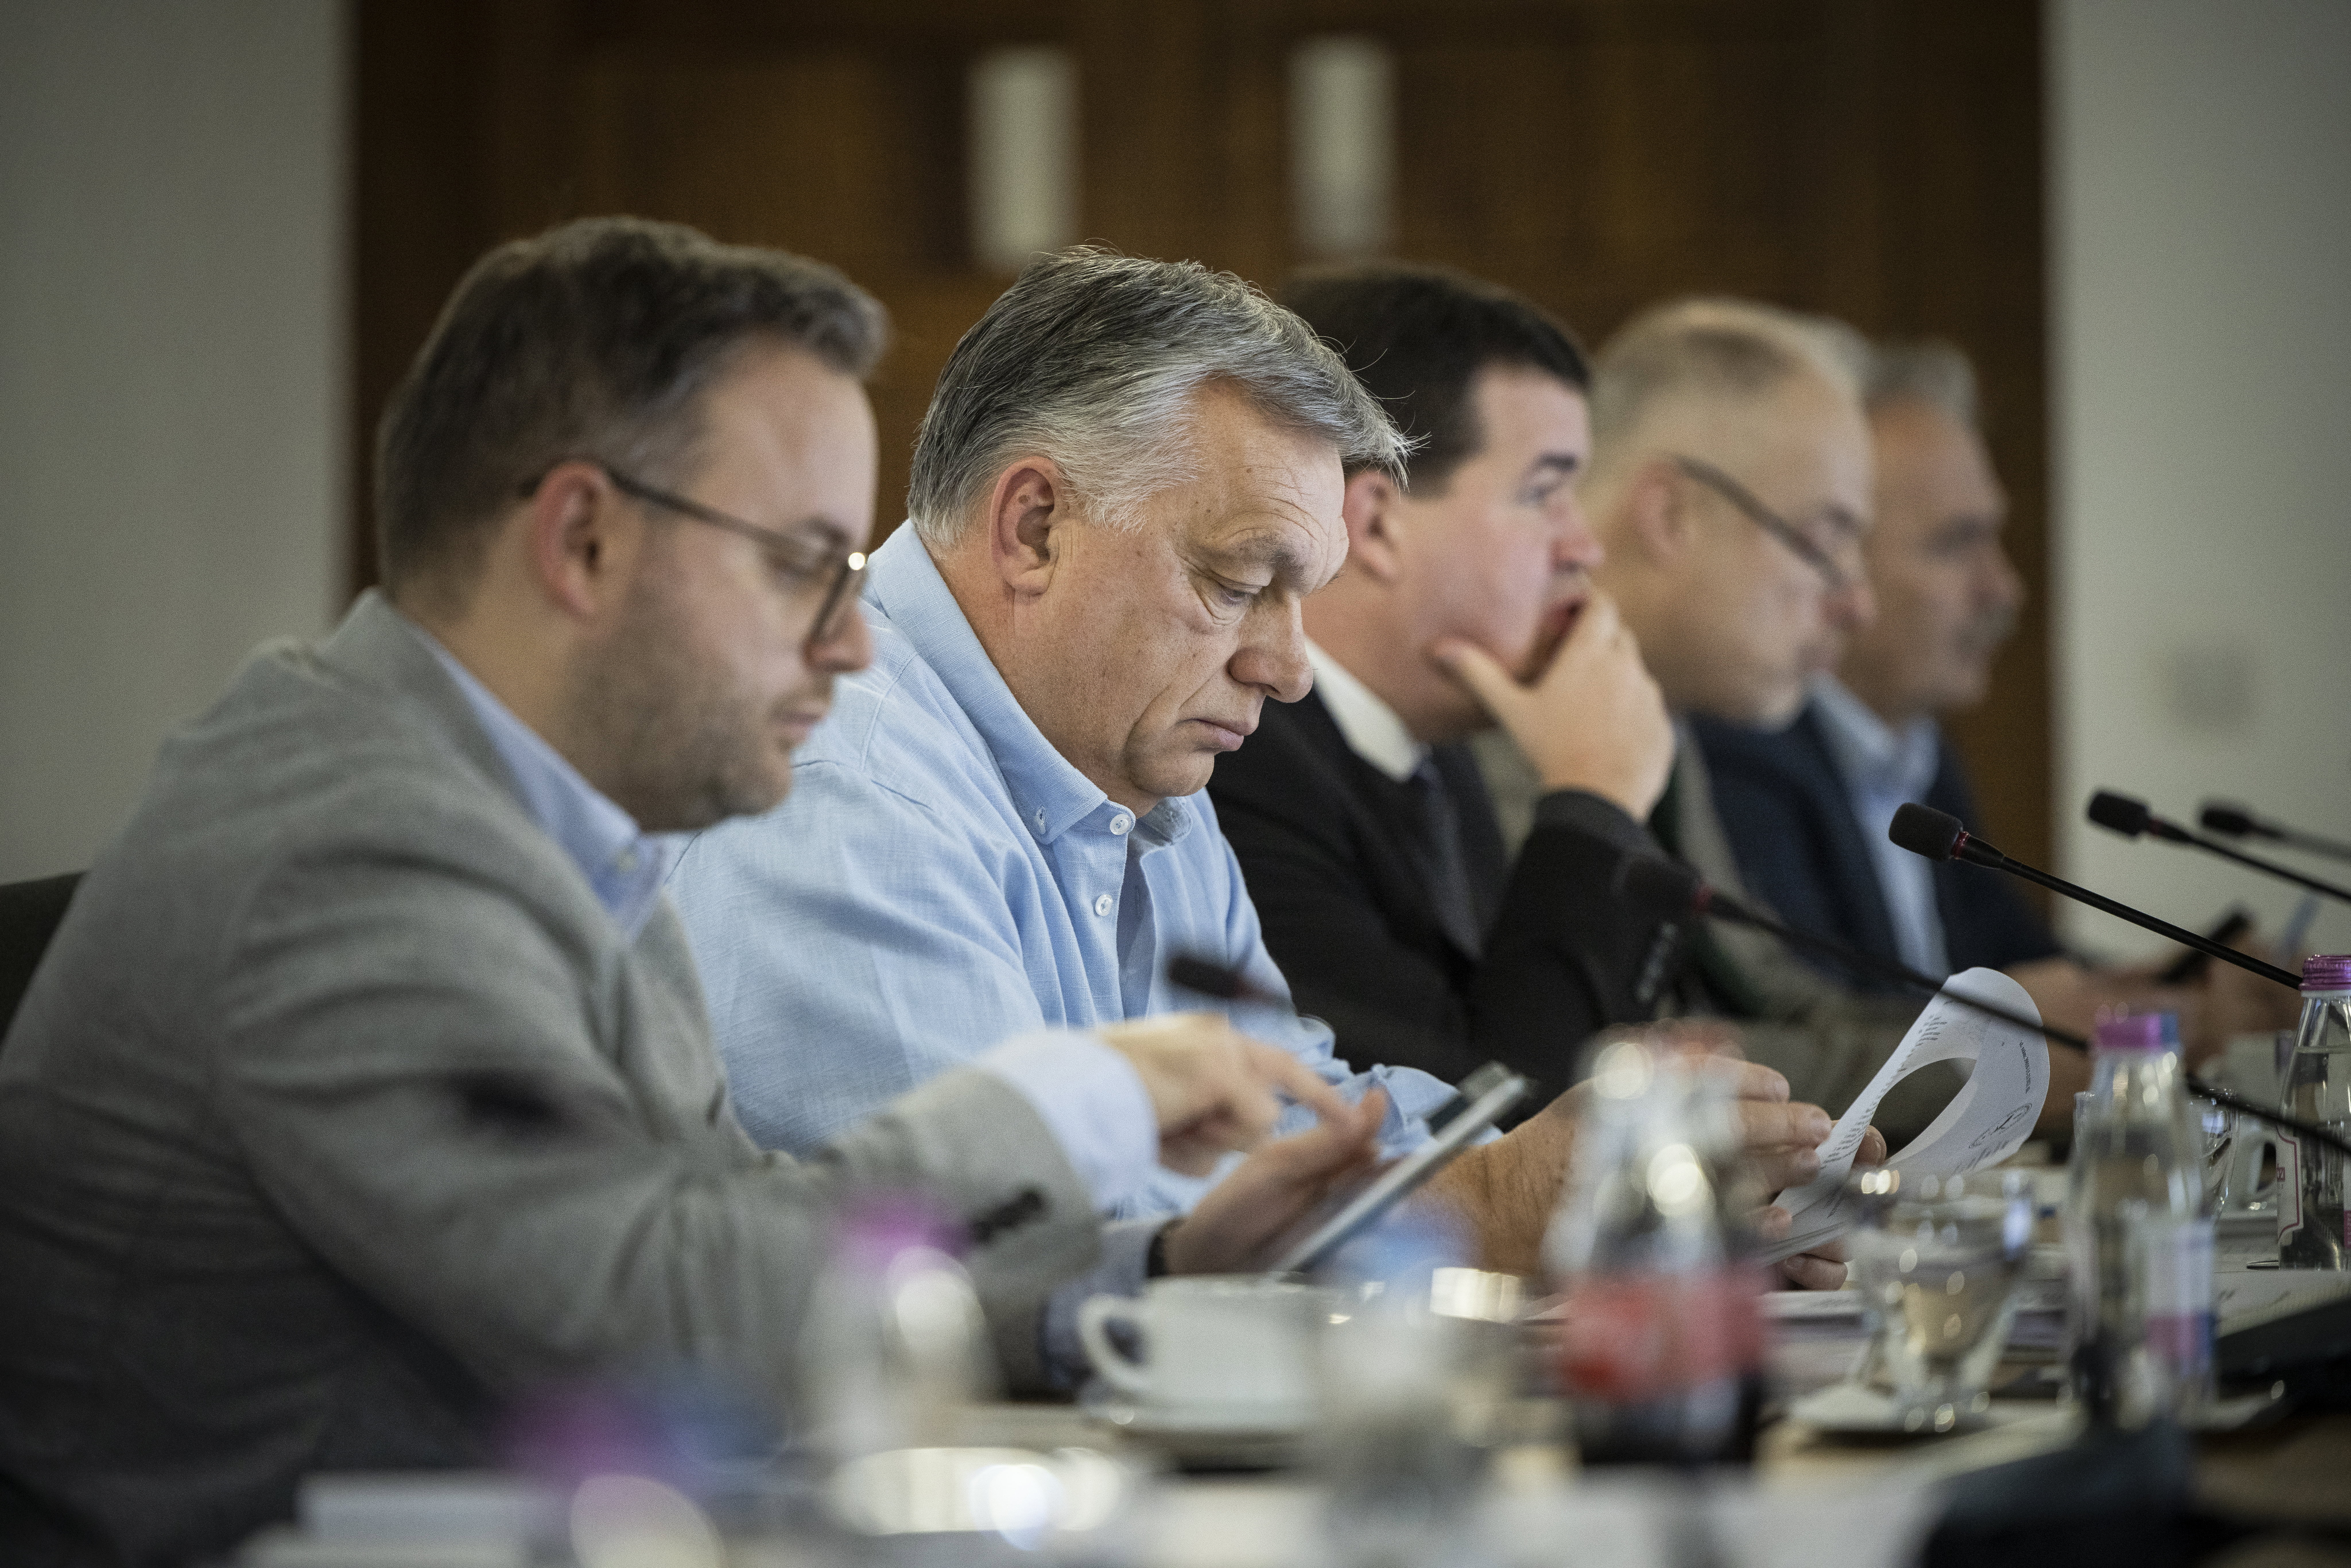 Megkezdődött Orbán Viktor rendkívüli kormányülése Sopronban – fotók